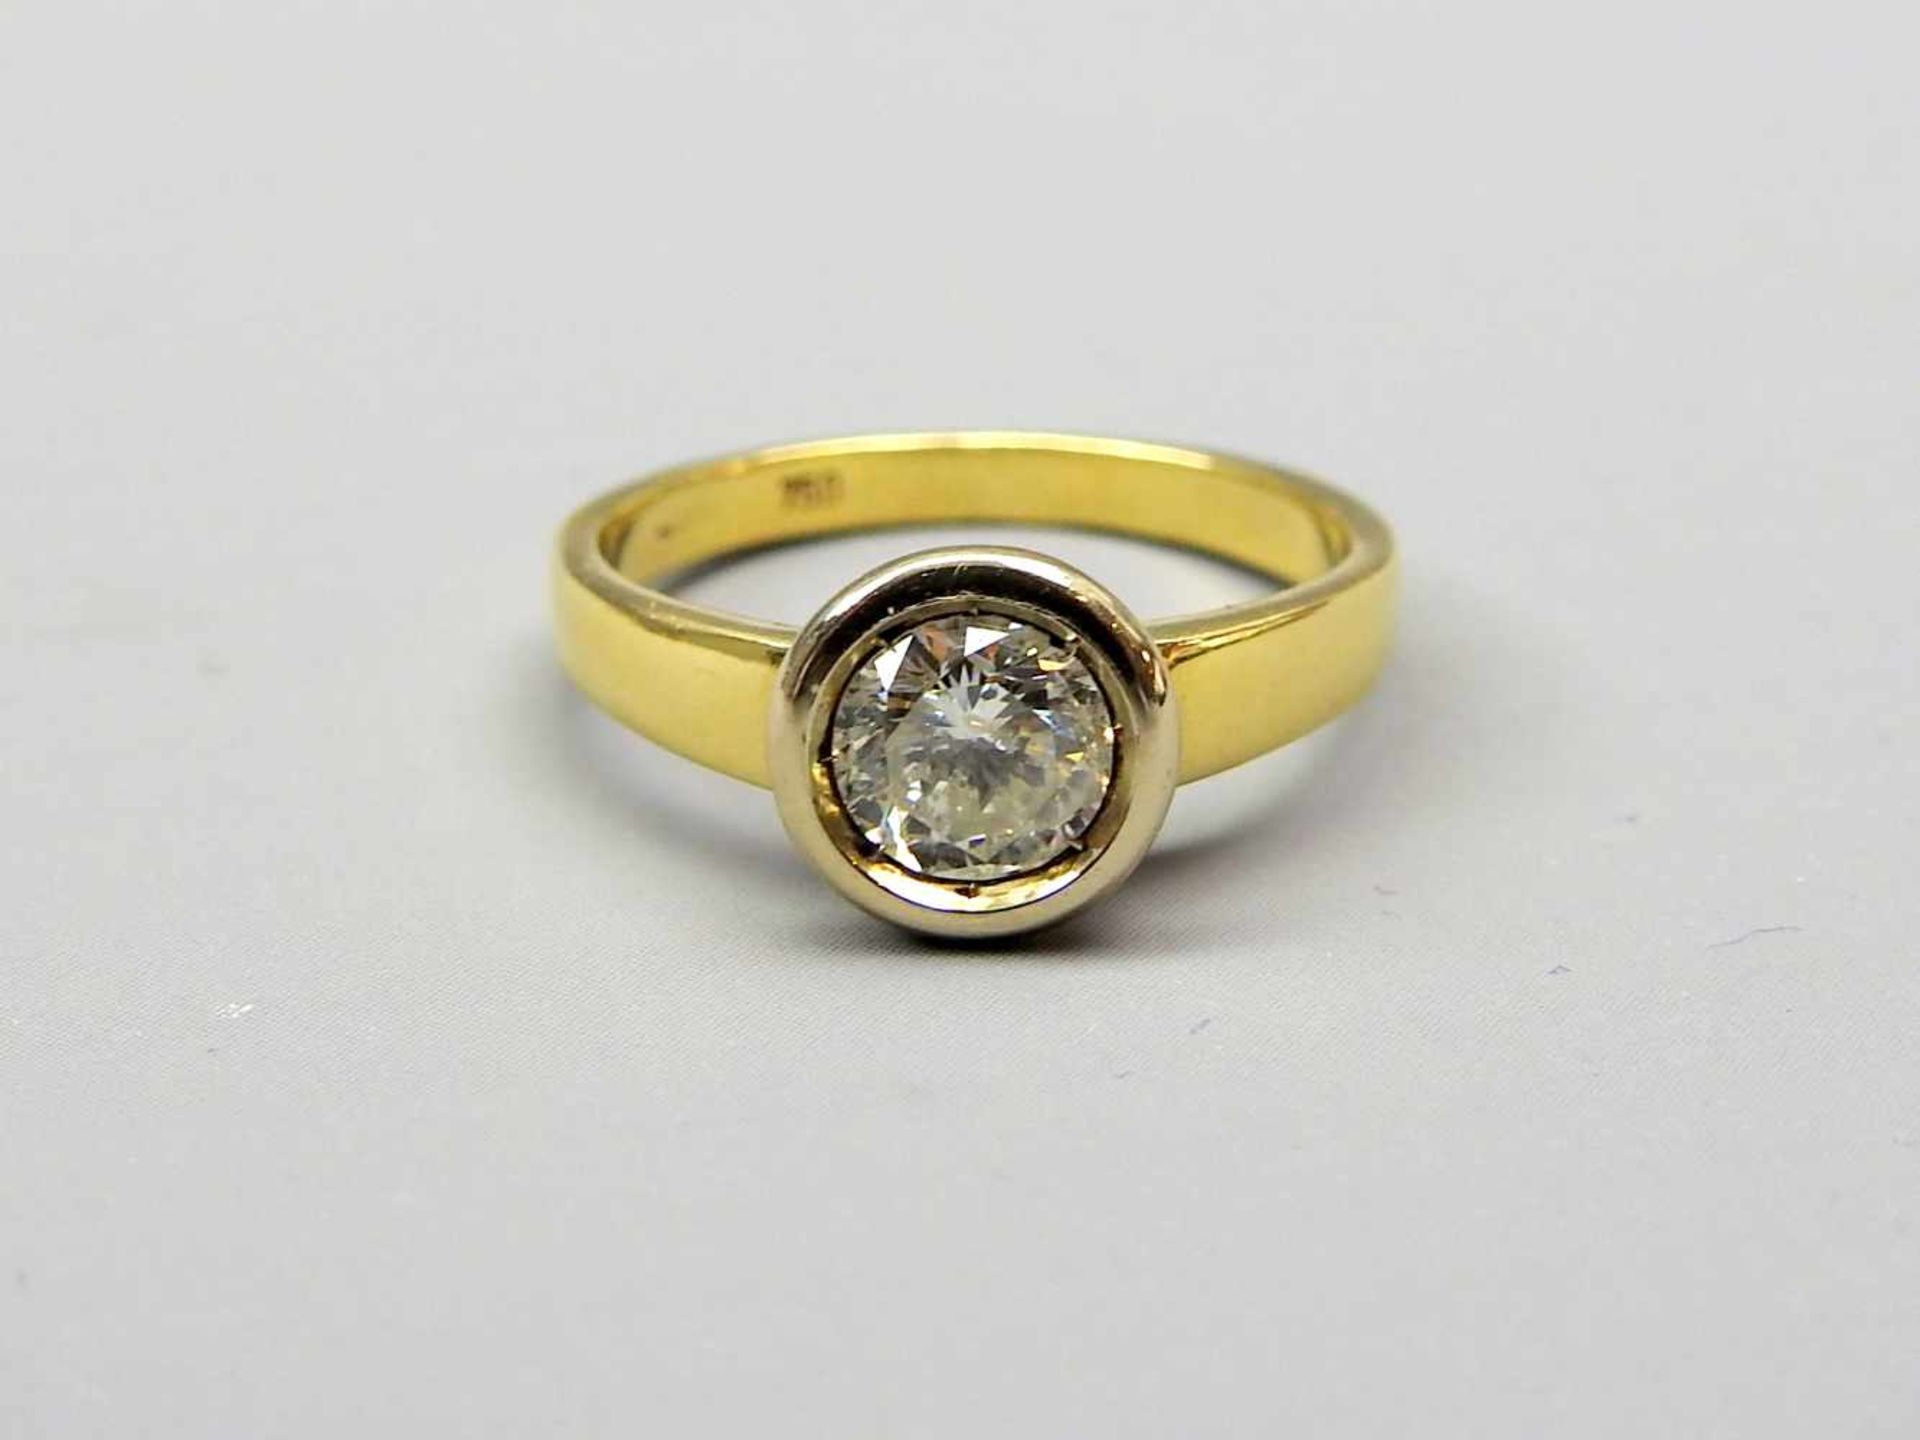 Diamant-Ring18 K. Gelbgold, mit Diamantbesatz von ca. 1 ct. Pipet 2, Wesselton. Ringgröße 57